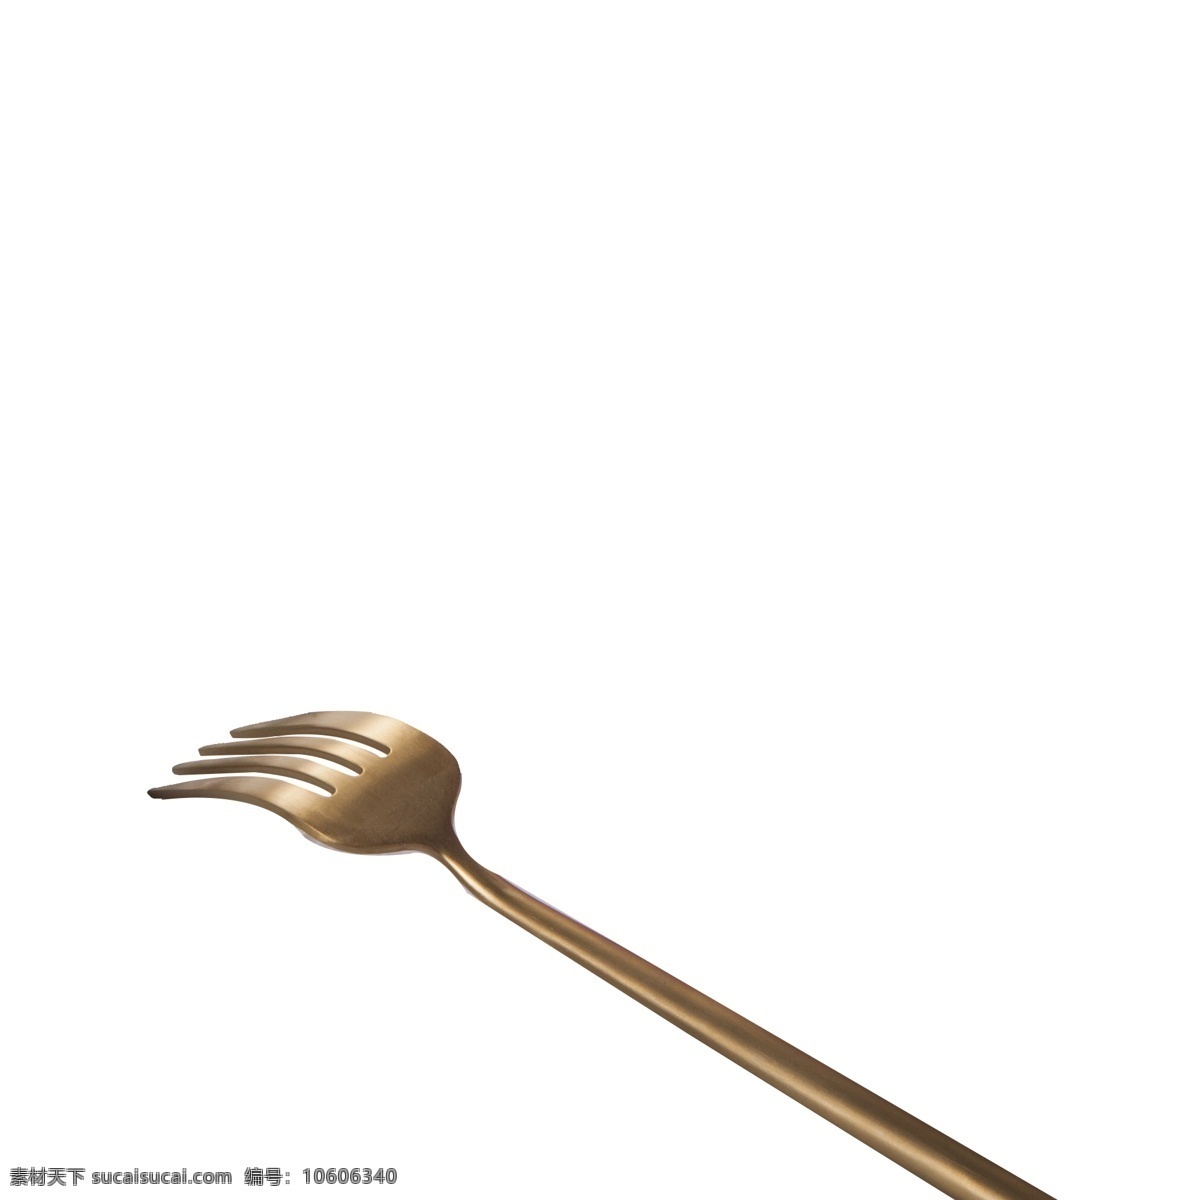 铜 色 金属 叉子 免 扣 图 搅拌咖啡 吃 下午 差 刀叉的 西餐餐具 金属叉子